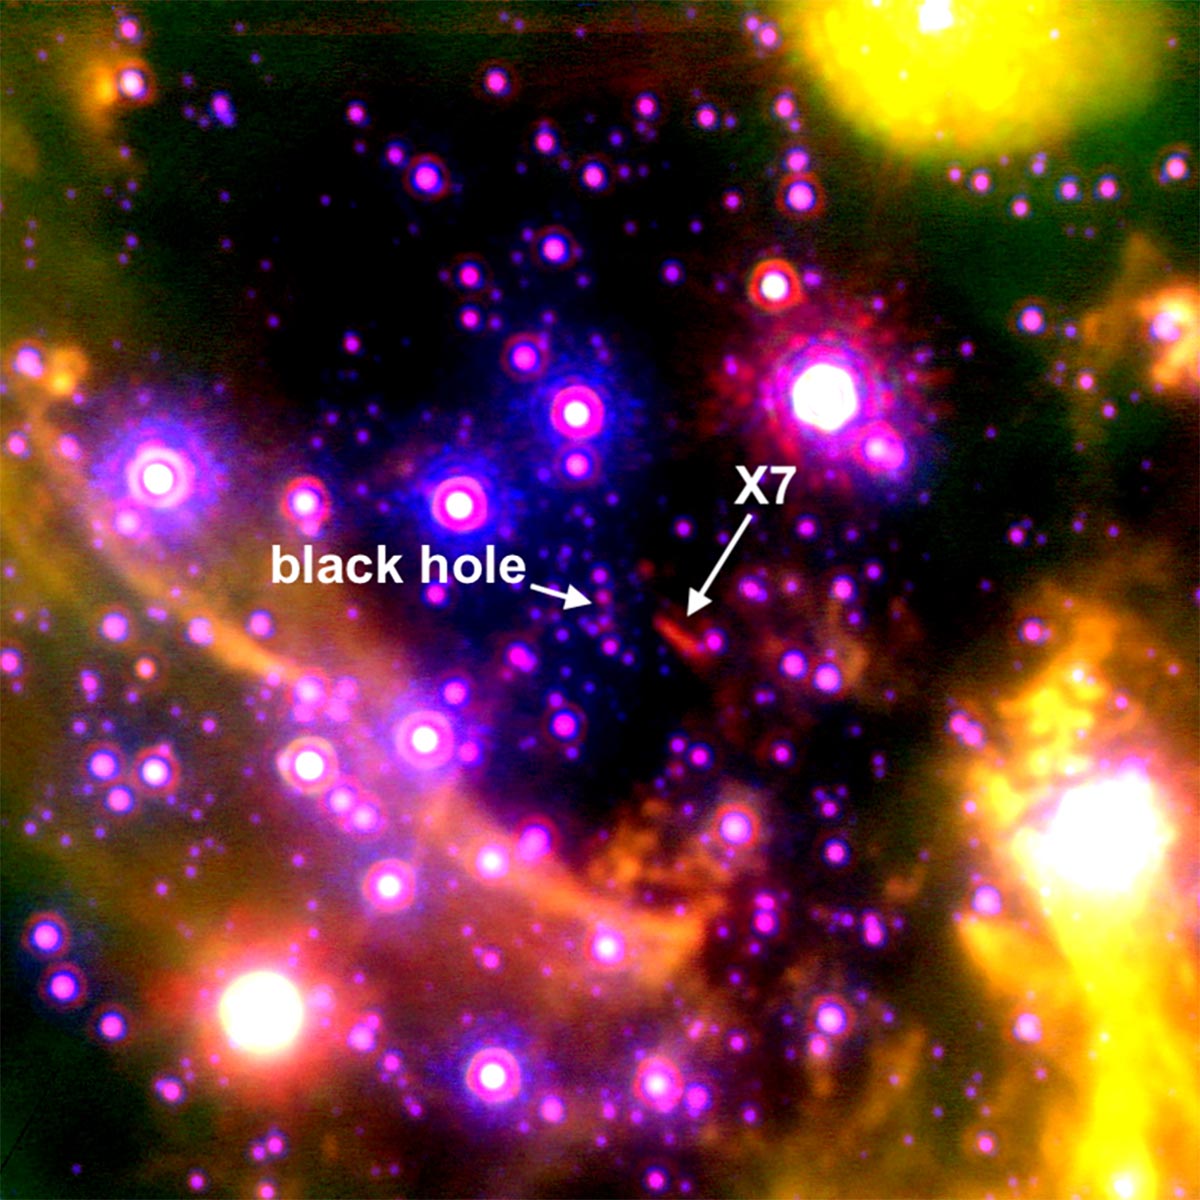 L’objet mystérieux est entraîné dans le trou noir supermassif de la Voie lactée